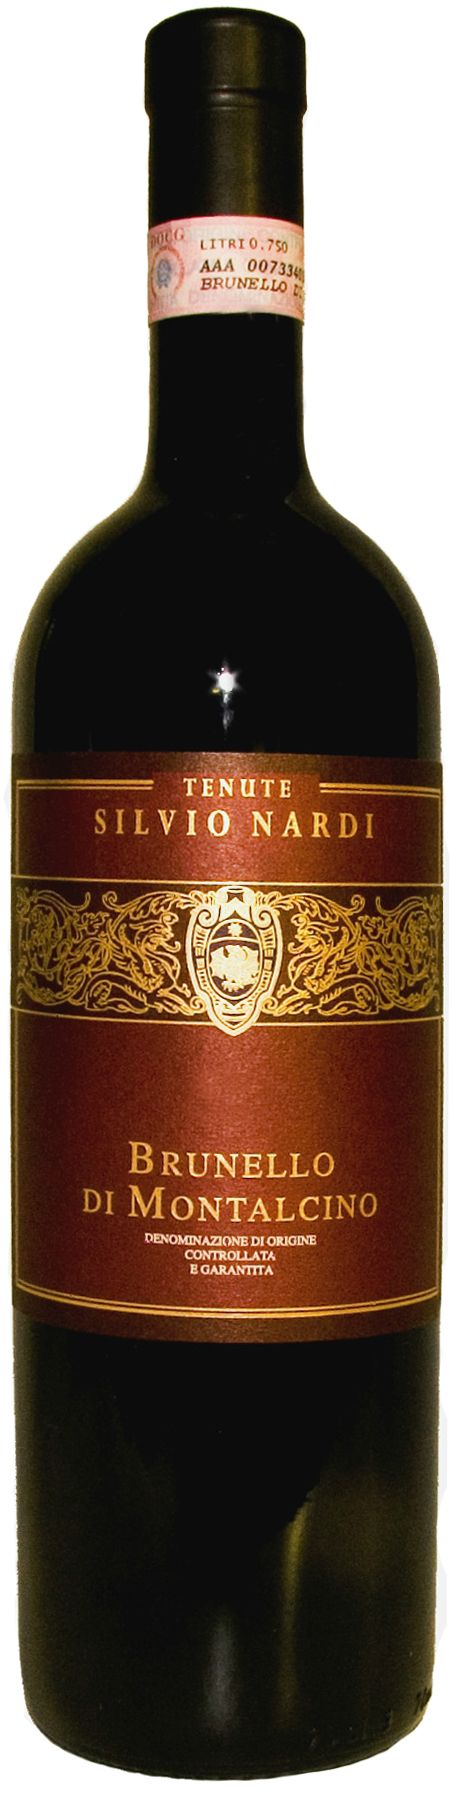 Tenute Silvio Nardi, Brunello Di Montalcino, 1998